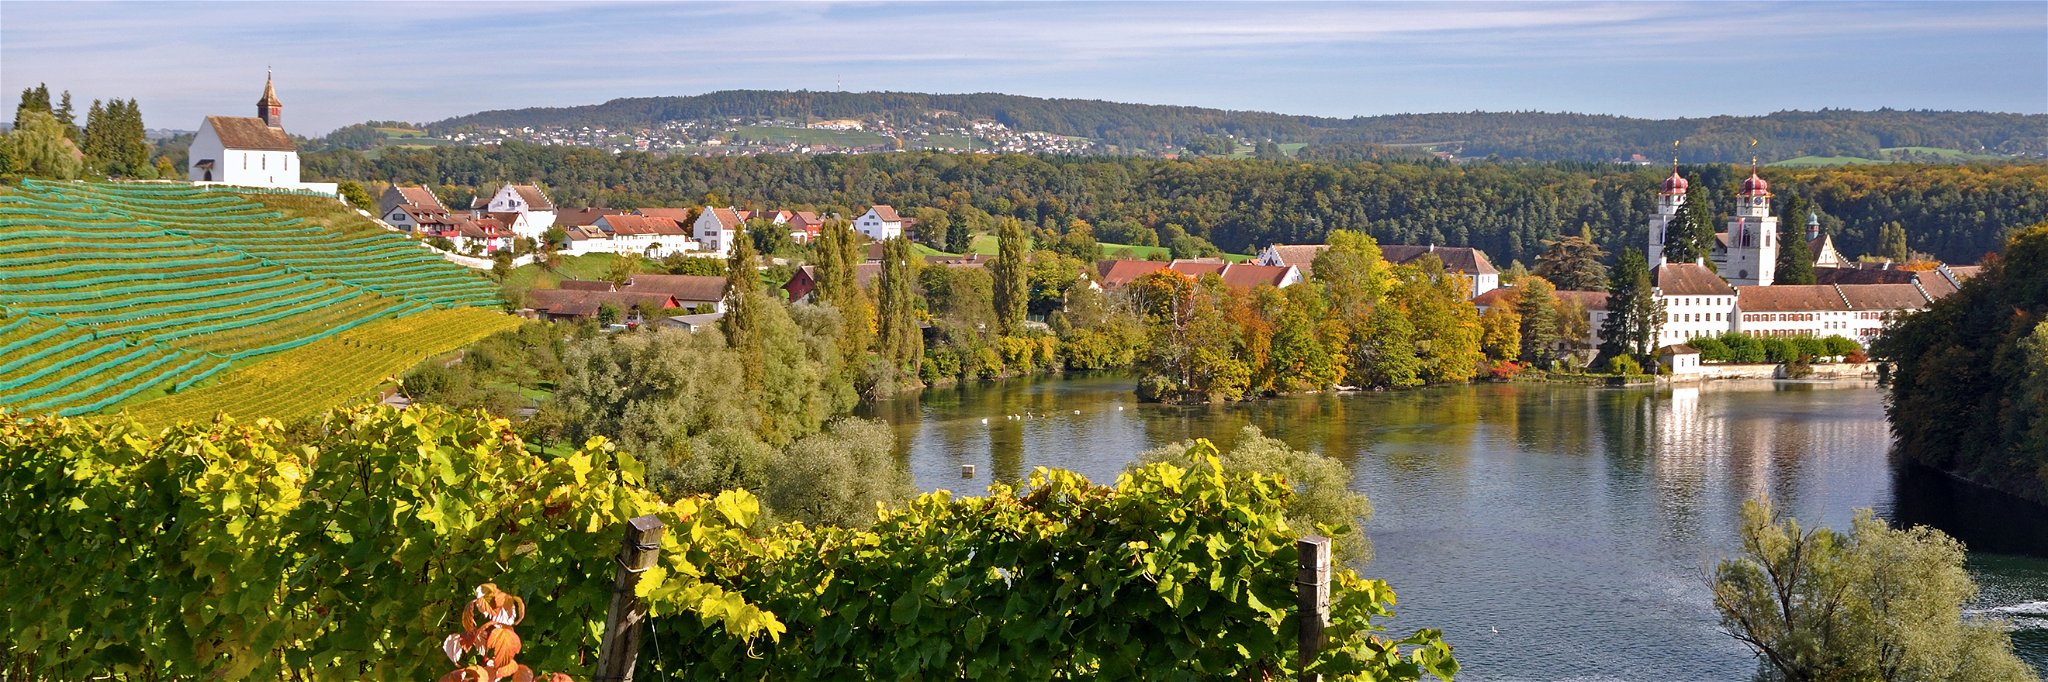 Blick von der Lage Chorb in Rheinau auf die Klosterinsel und die Rheinschleife.